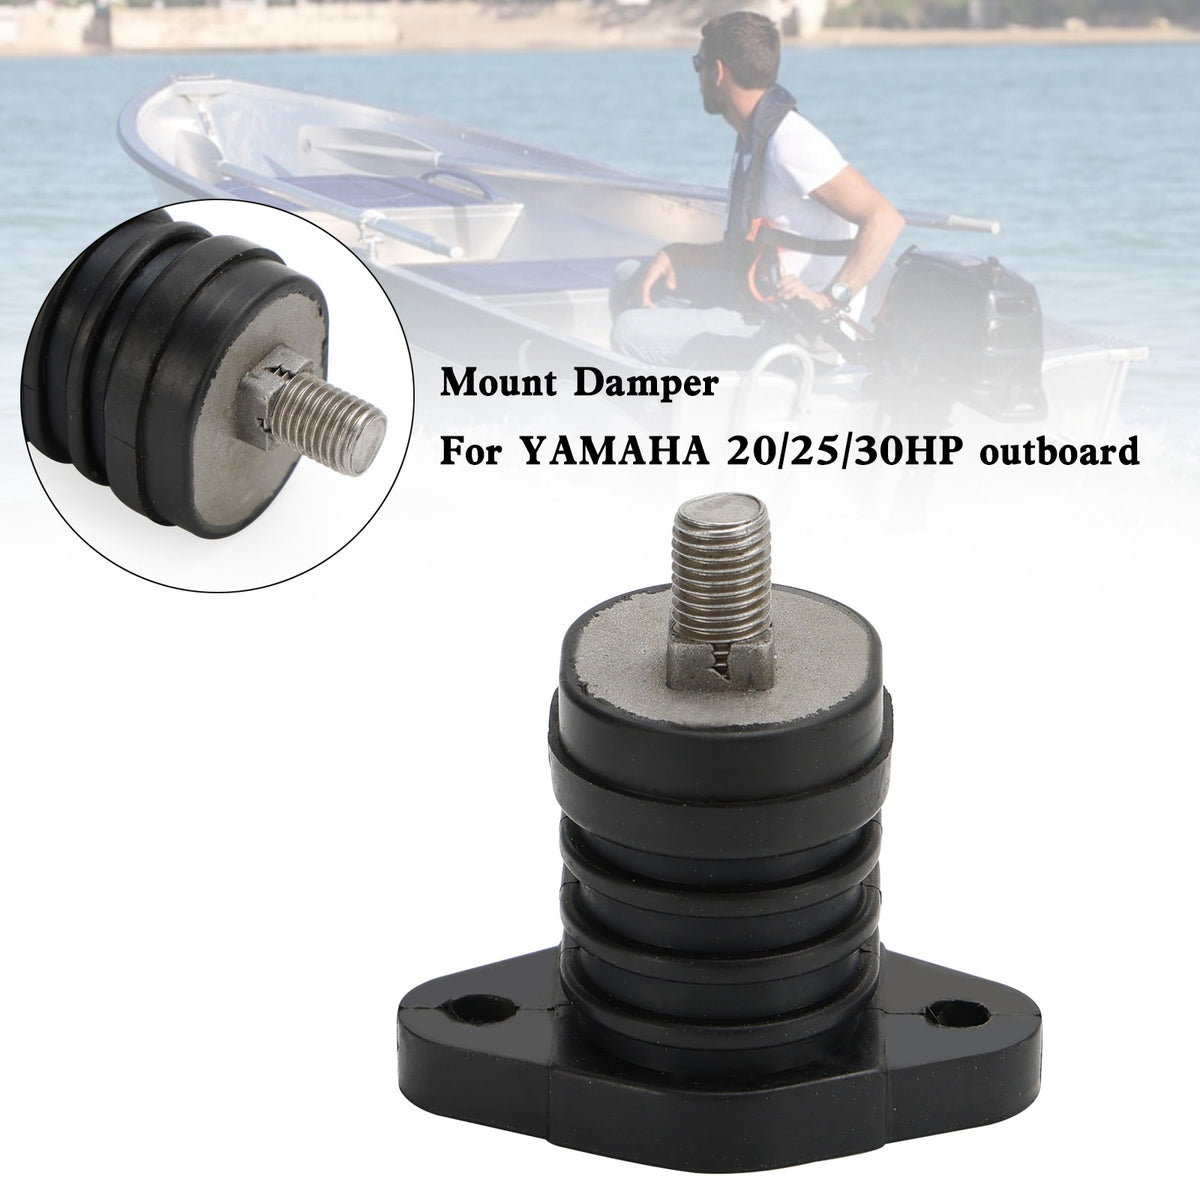 689-44516-00 Upper front mount damper for YAMAHA 20/25/30HP outboard